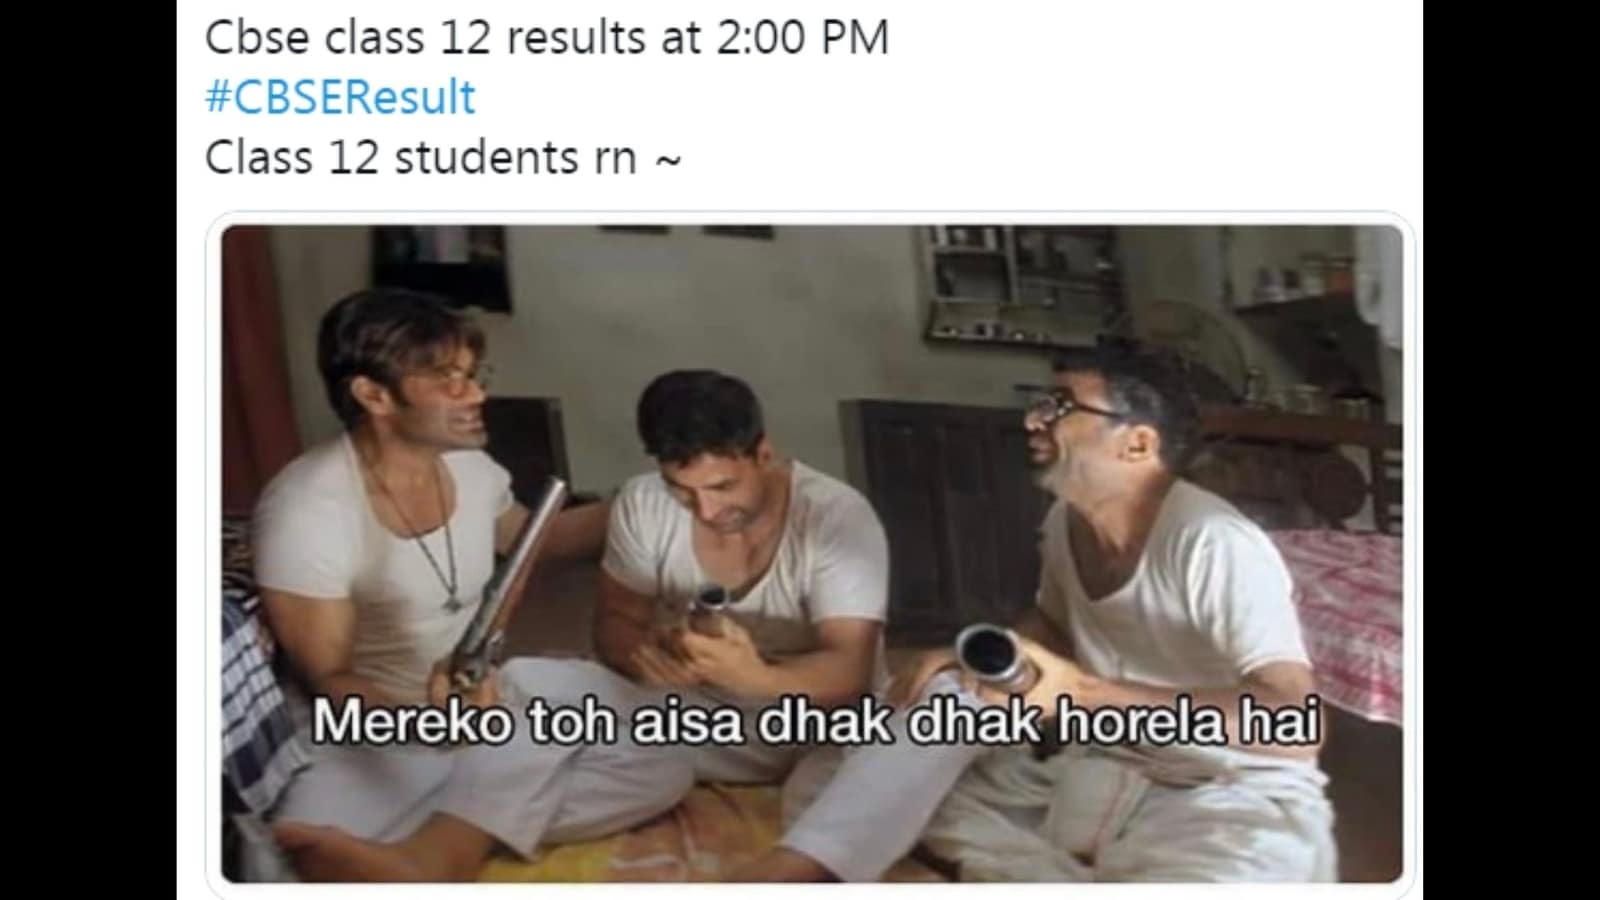 CBSE Class 12 outcomes: Netizens share hilarious memes ...